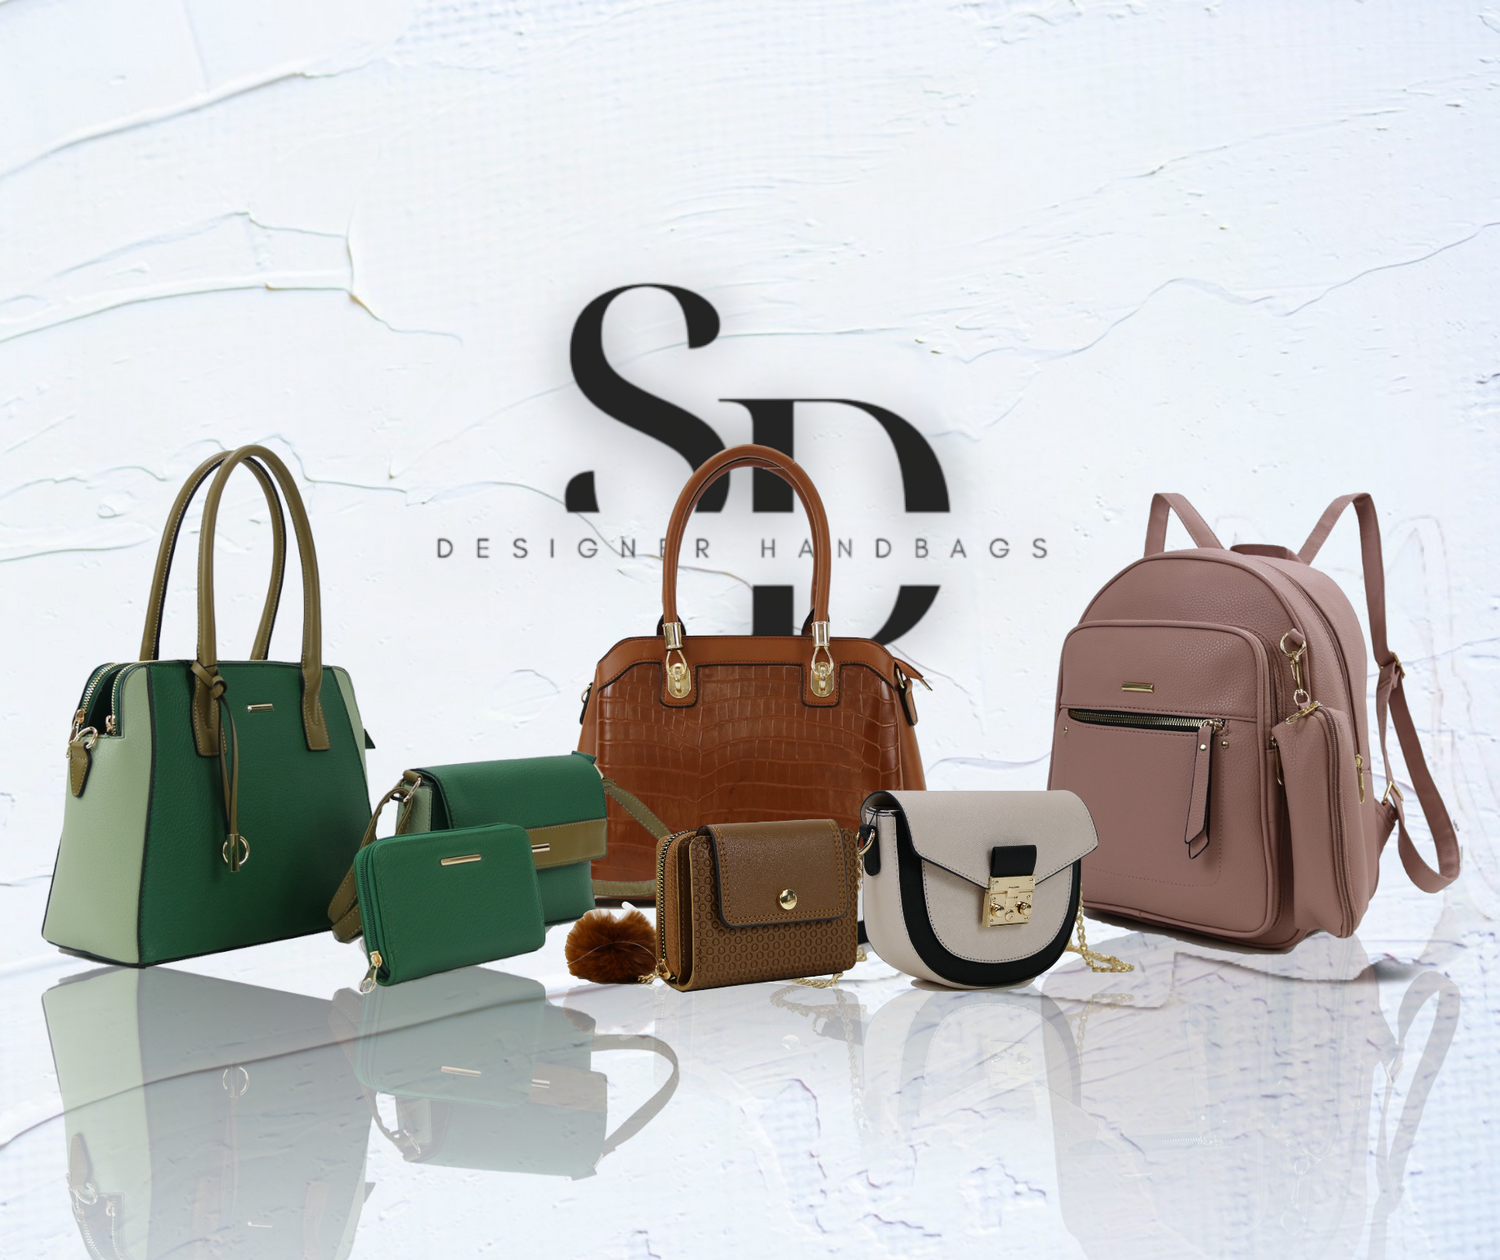 3-IN-1 Handbag Set S1794 – SD Designer Handbags